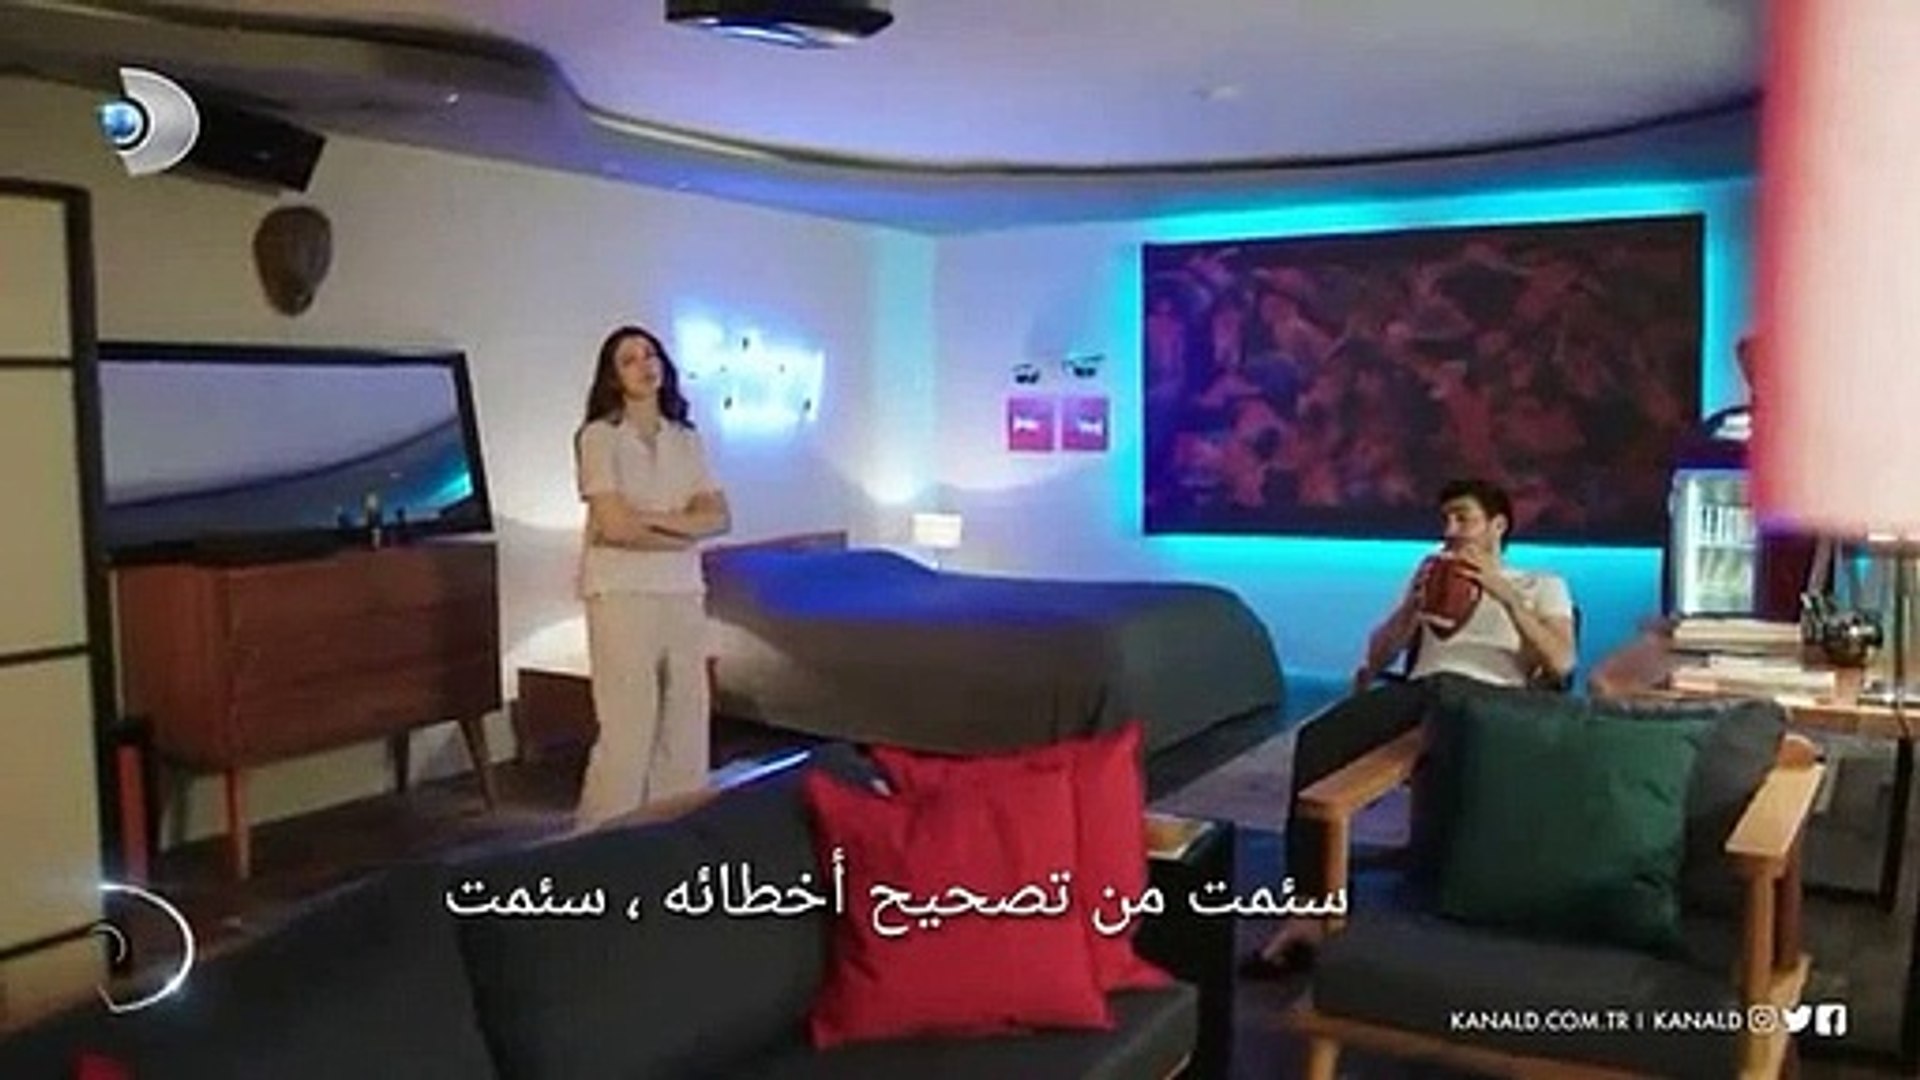 مسلسل العشق الفاخر الحلقة 5 اعلان 2 مترجم للعربية Dailymotion Video